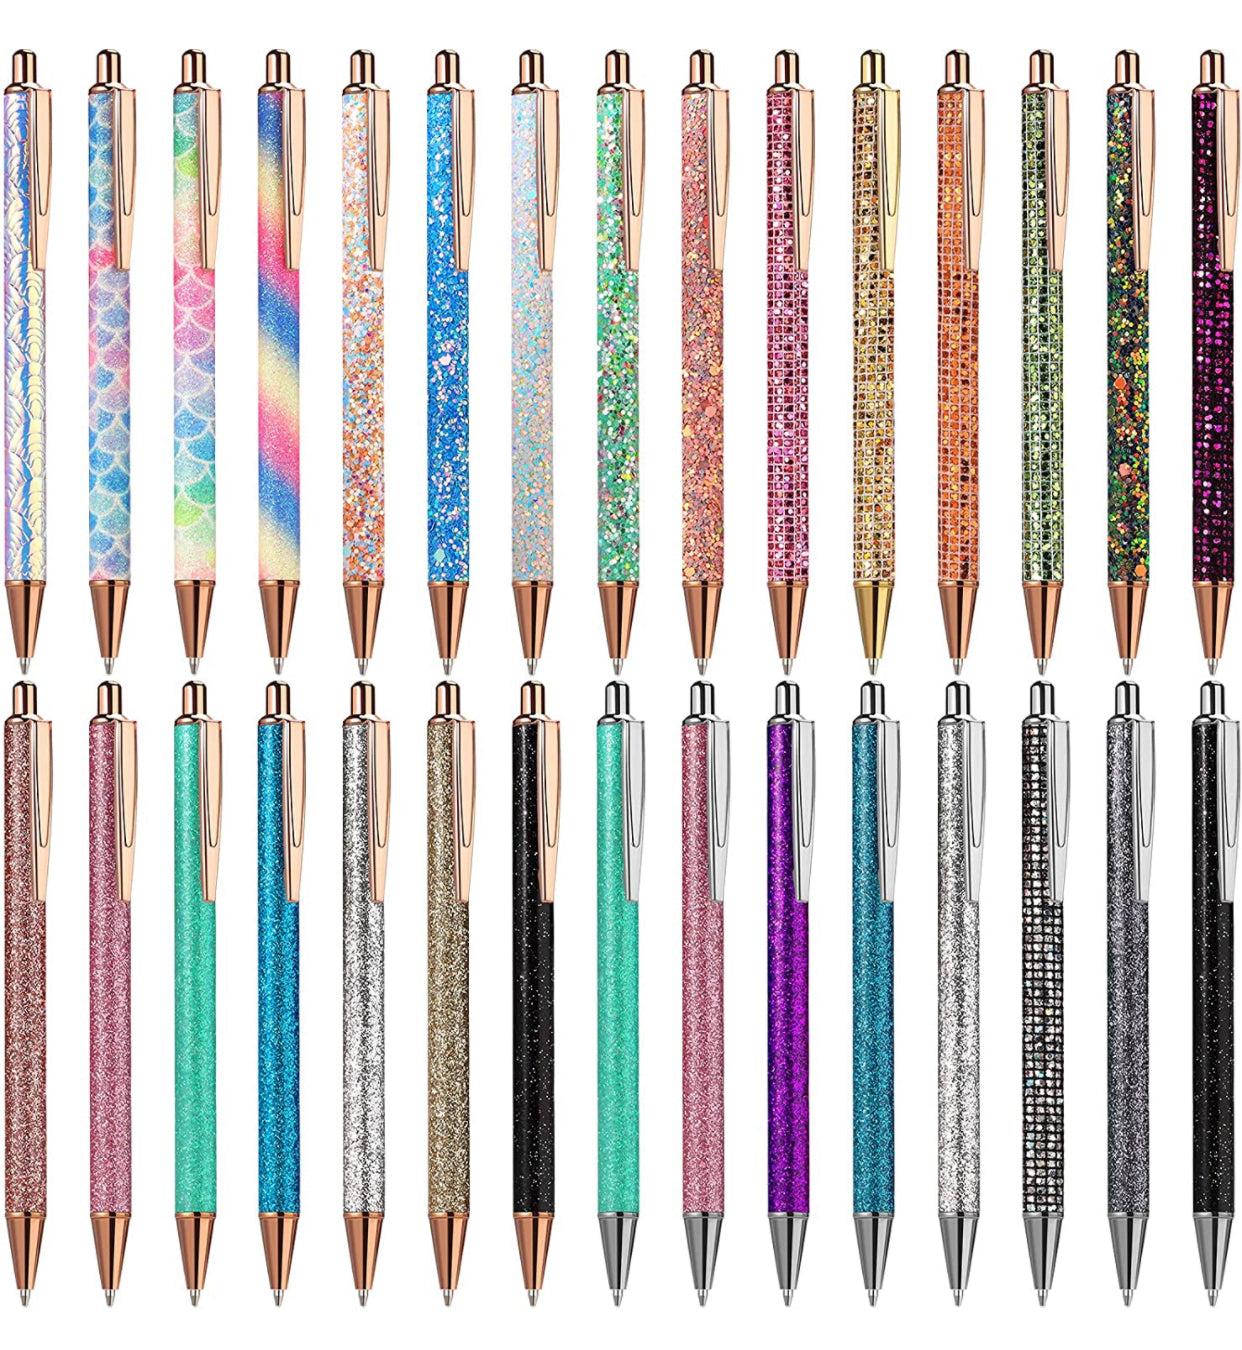 Pen - Metal Shimmer Glitter